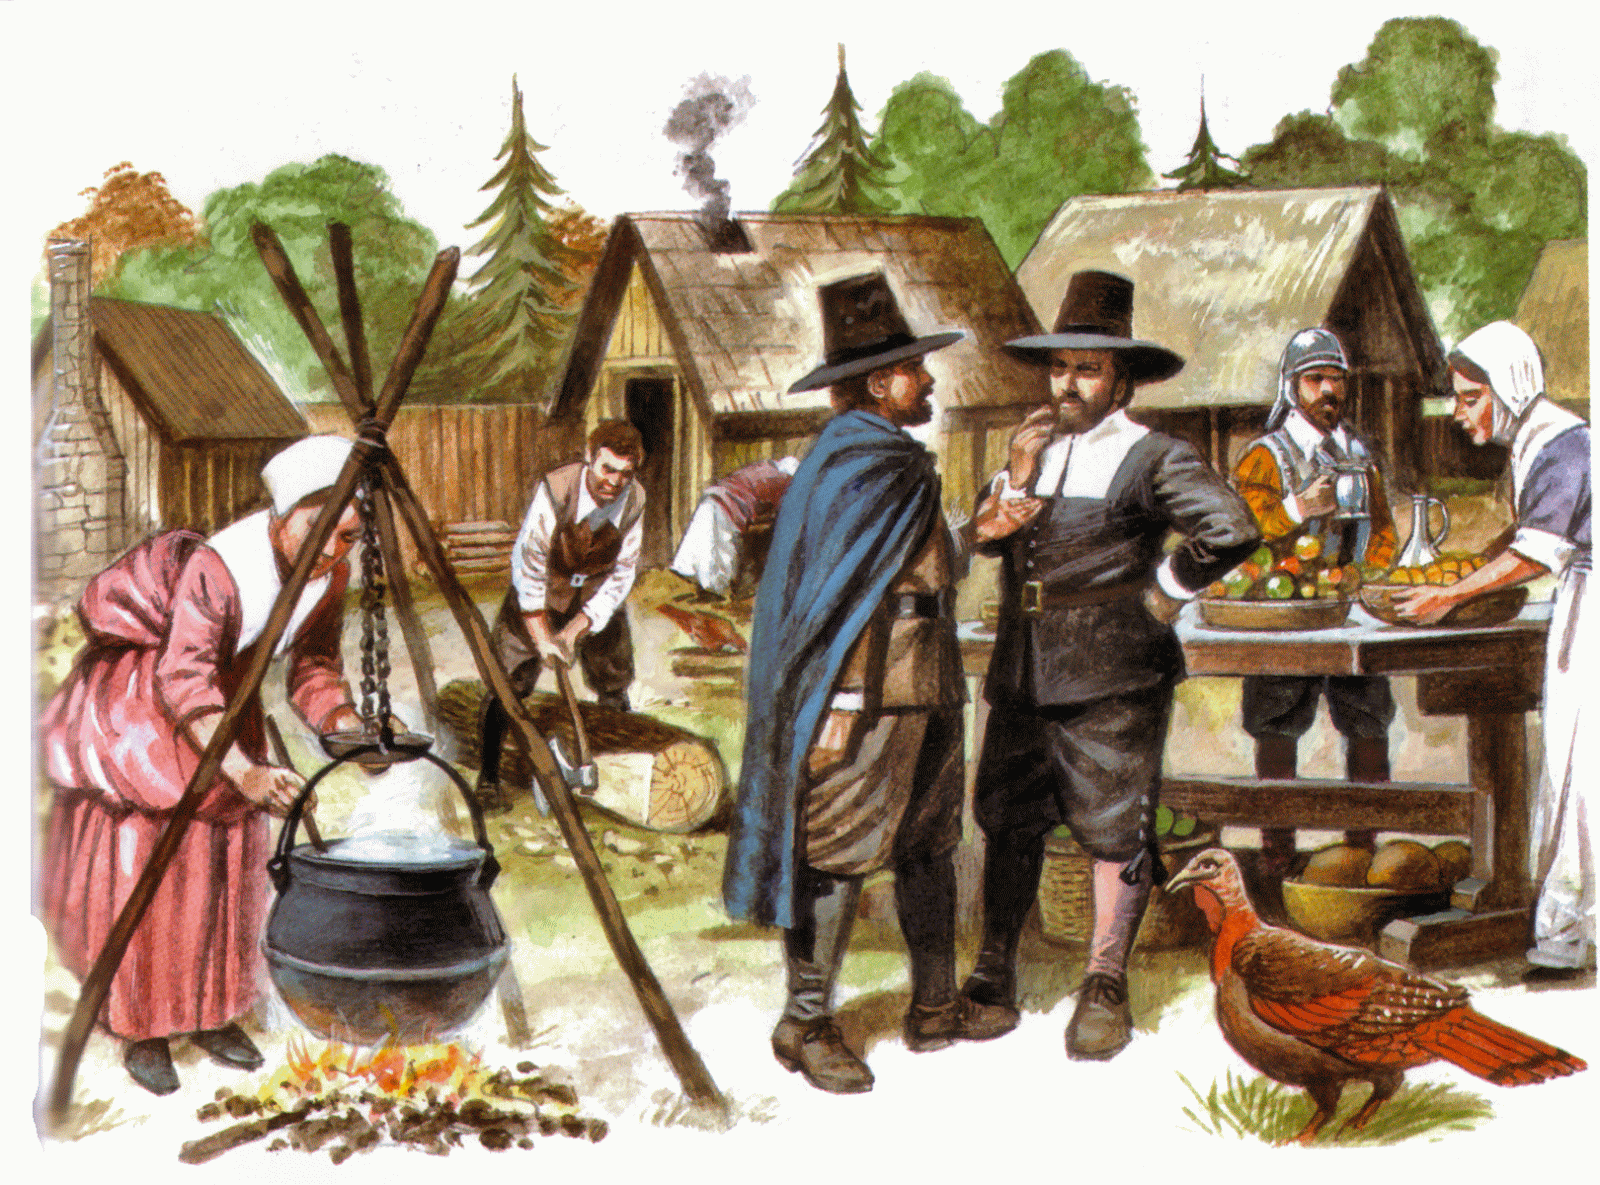 Что использовали для бритья первые американские колонисты